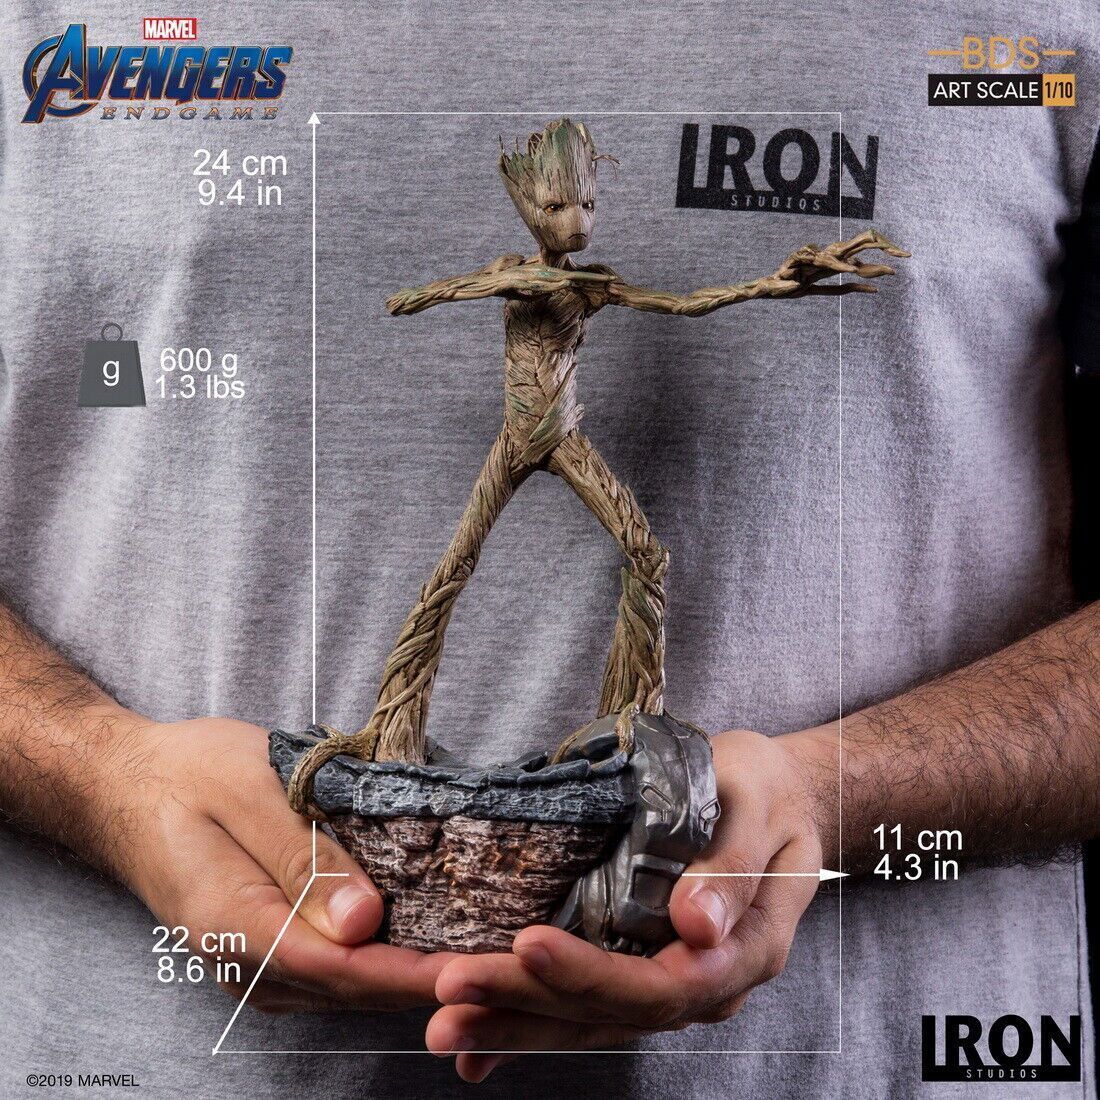 Huge Iron Studios Avengers: Endgame Groot BDS Art 1/10 Statue on eBay